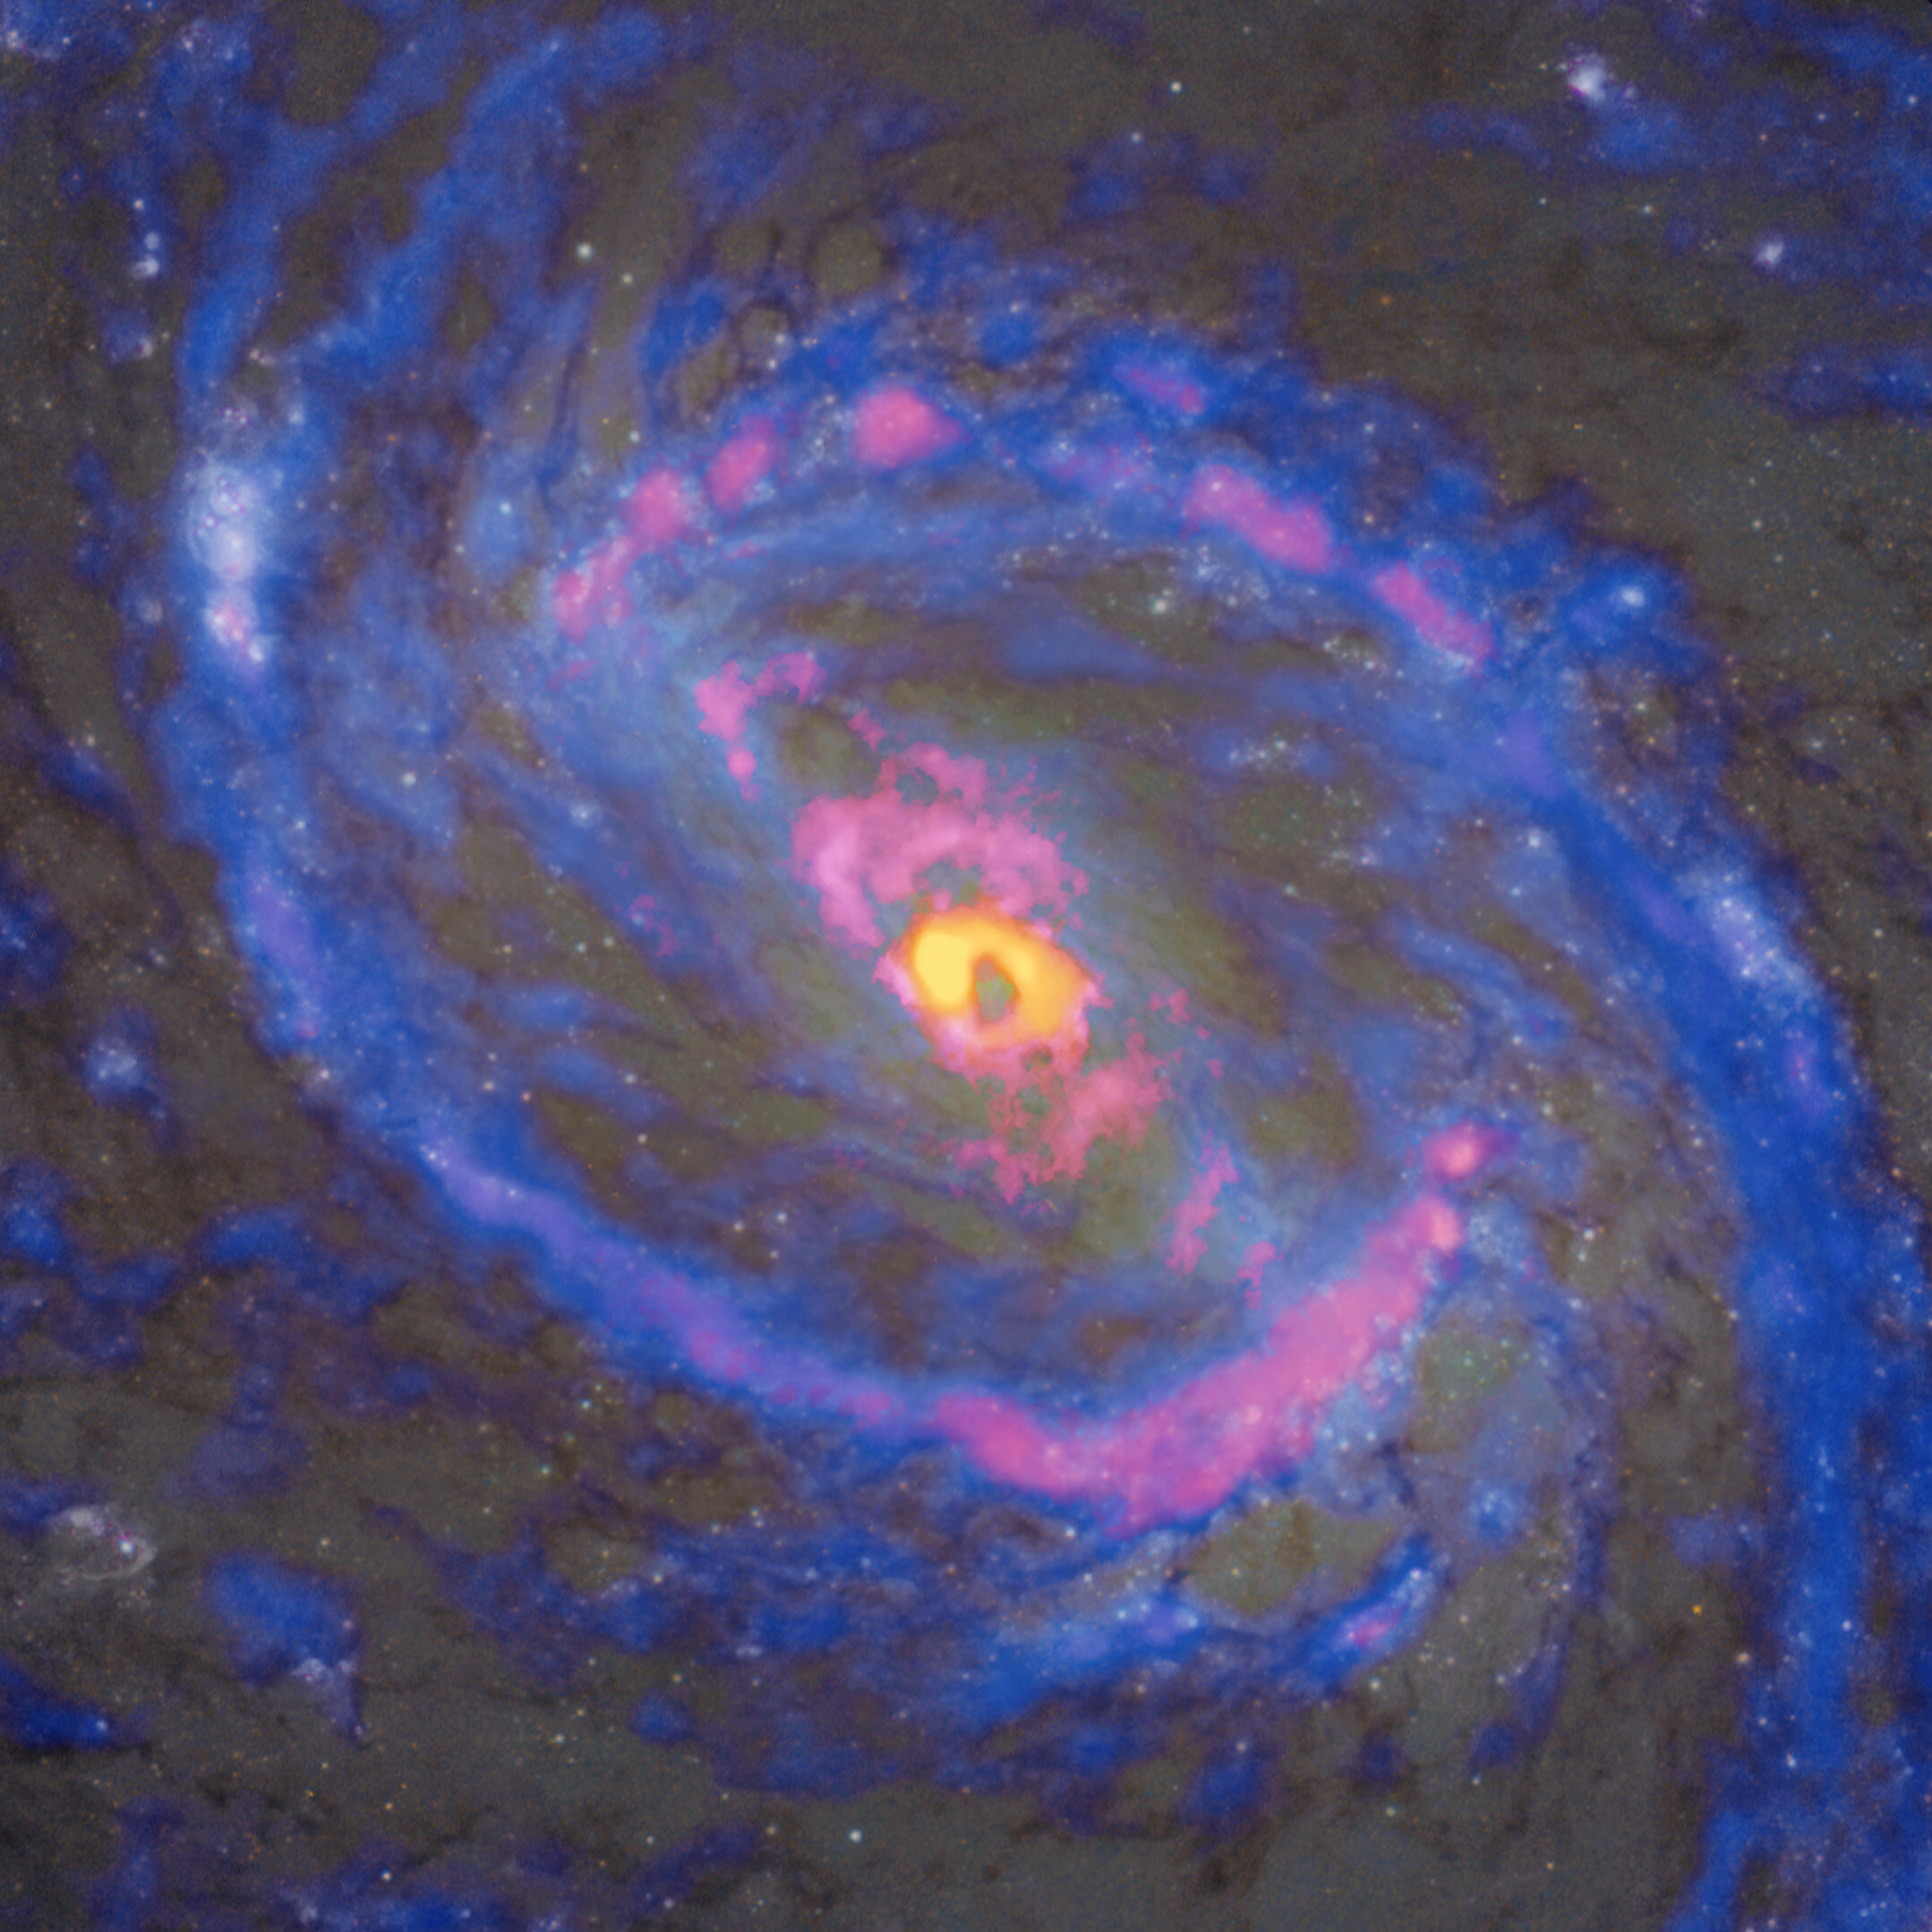 La galaxia espiral Messier 77 (NGC 1068), observada por ALMA y el telescopio espacial Hubble. Los isótopos de cianuro de hidrógeno (H13CN), en amarillo, sólo se encuentran alrededor del agujero negro del centro. Los radicales de cianuro (CN), mostrados en rojo, aparecen no sólo en el centro y en una estructura de gas a gran escala en forma de anillo, sino también a lo largo de los chorros bipolares que se extienden desde el centro hacia el noreste (arriba a la izquierda) y el suroeste (abajo a la derecha). Los isótopos de monóxido de carbono (13CO), mostrados en azul, evitan la región central. Crédito: ALMA (ESO/NAOJ/NRAO), NASA/ESA Hubble Space Telescope, T. Nakajima et al.